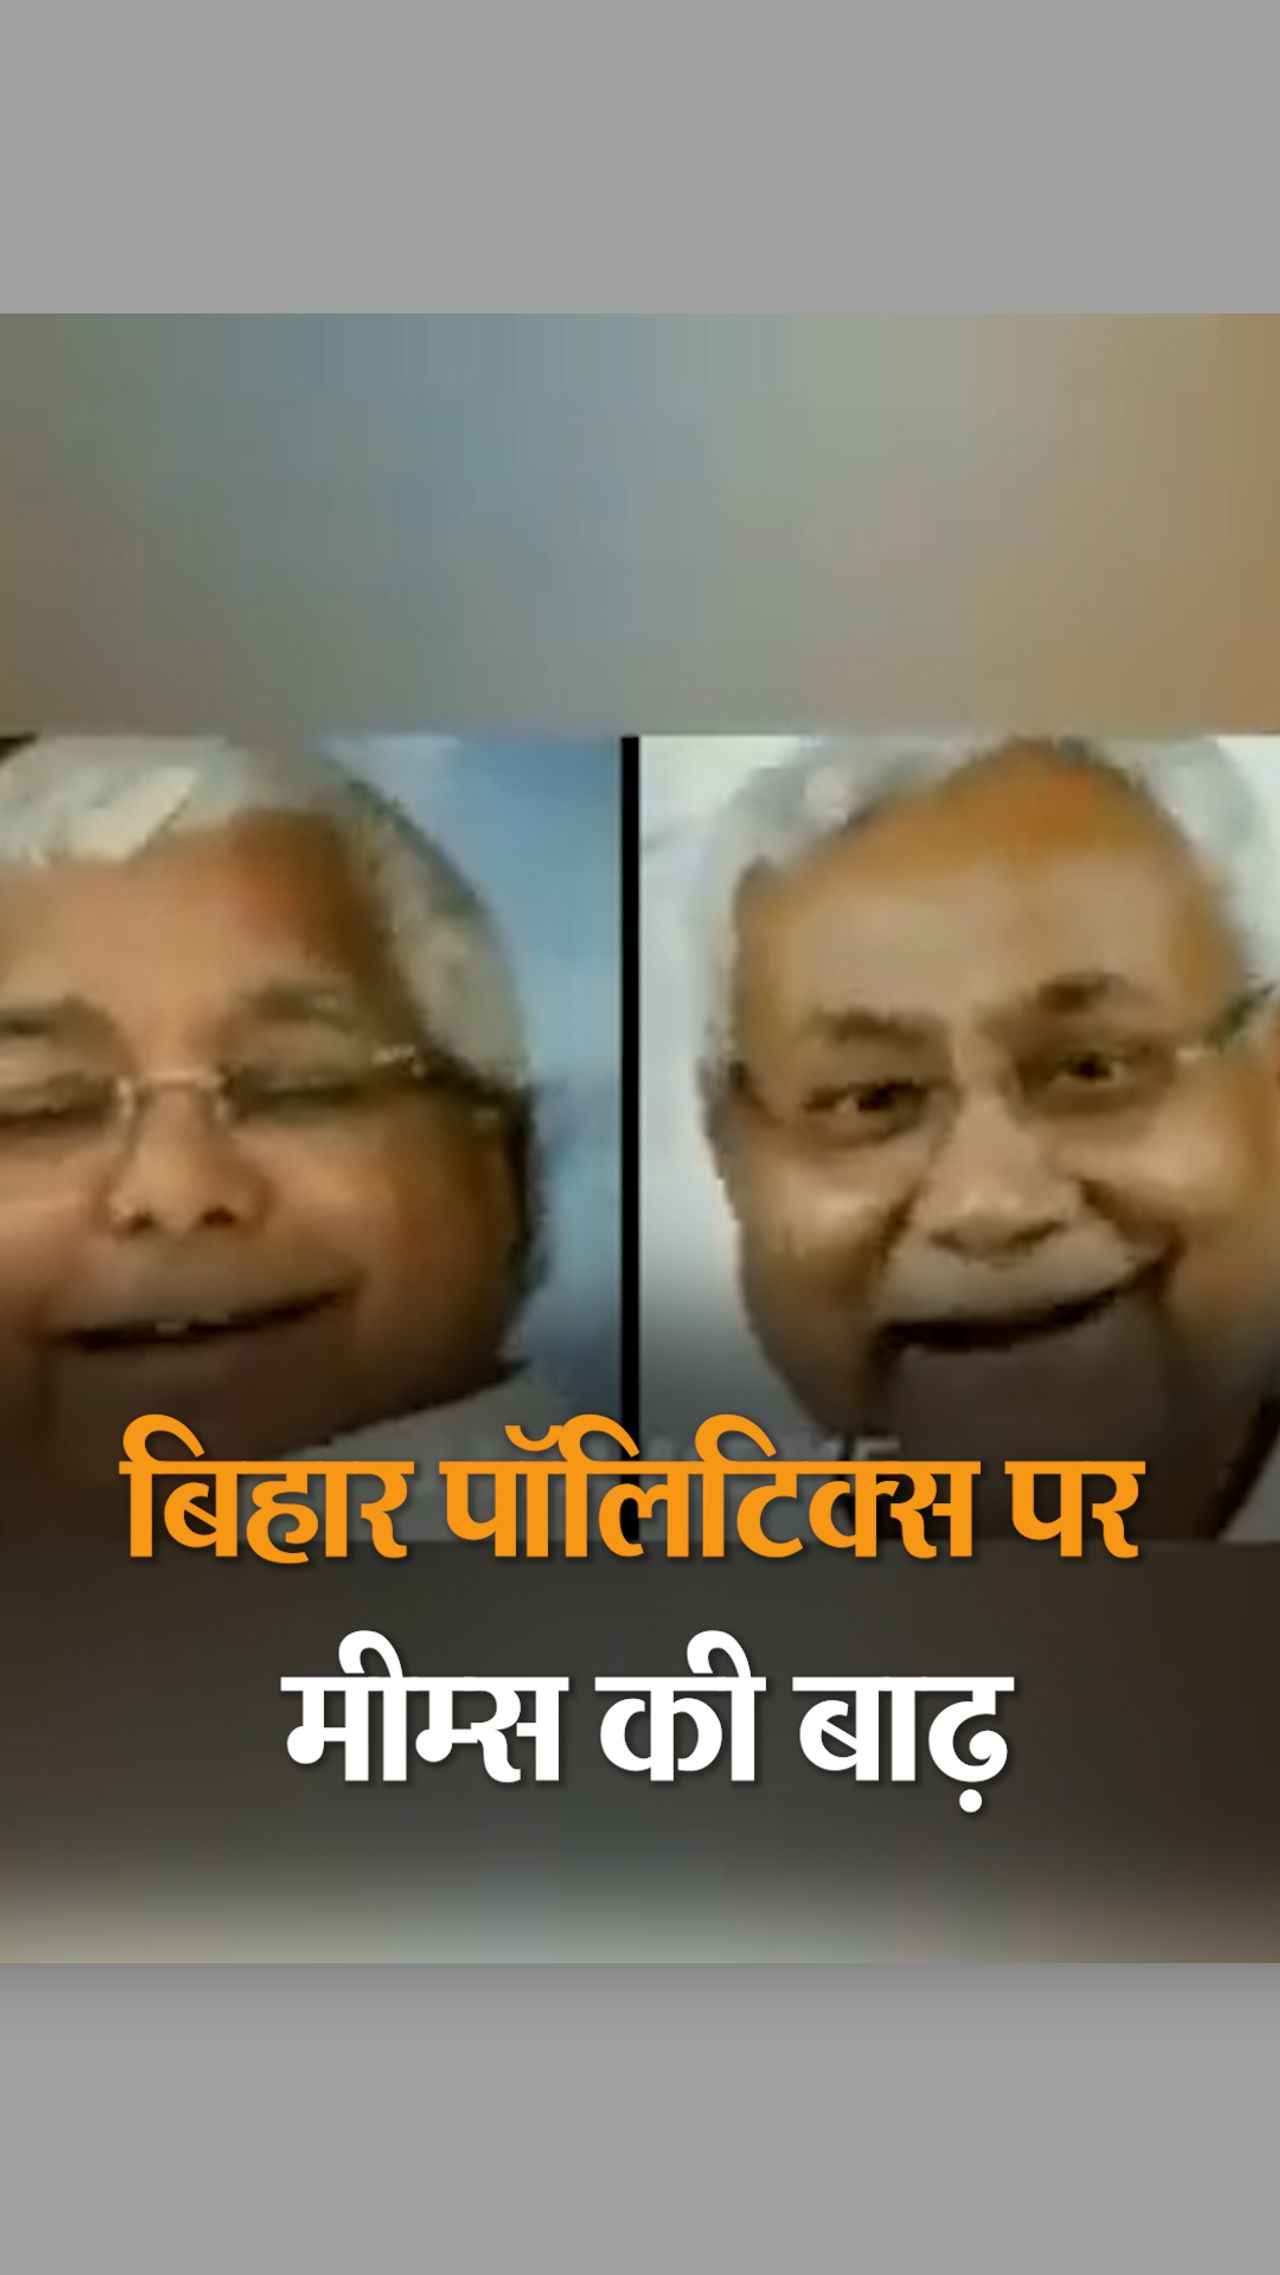 Reaction of social media users on Bihar politics